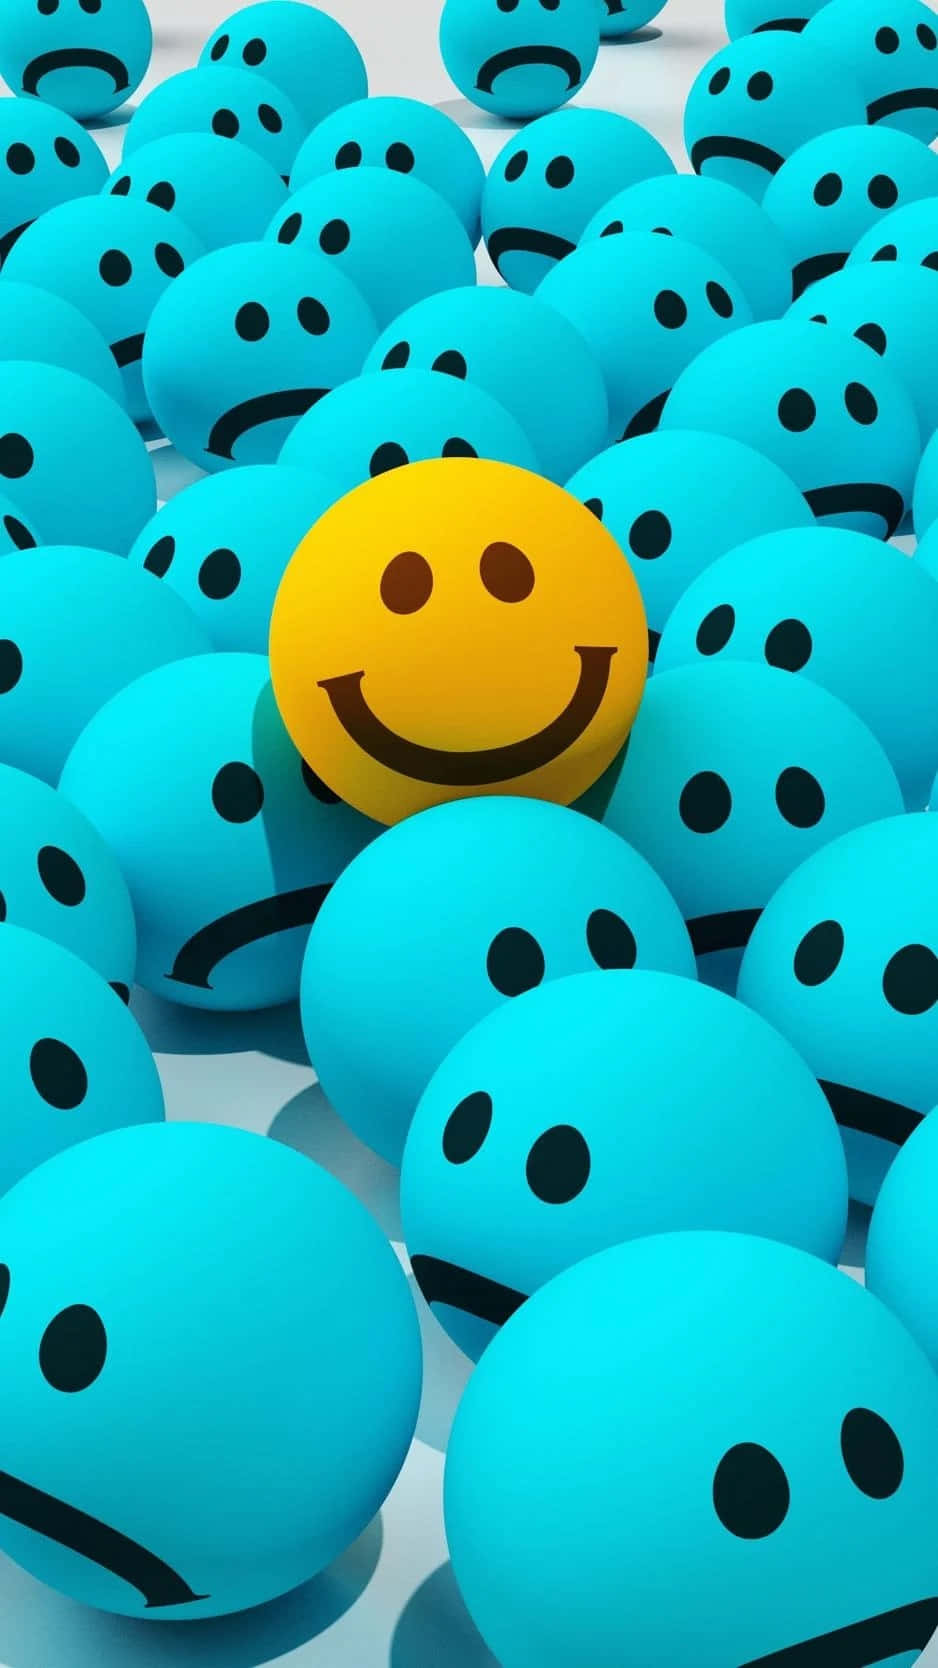 Difundela Felicidad Hoy -- Haz Que Alguien Sonría